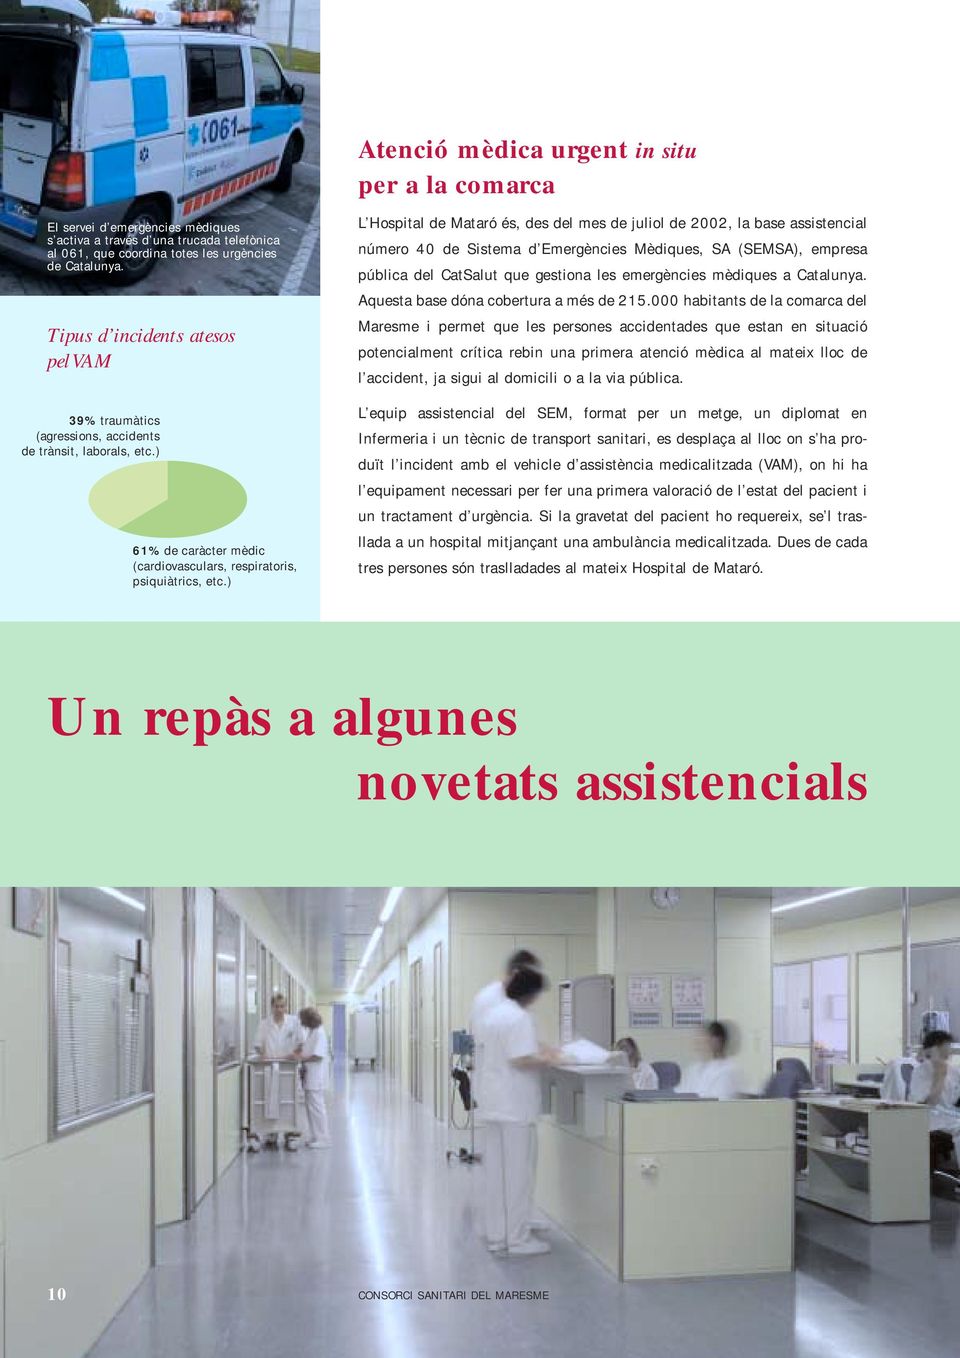 ) L Hospital de Mataró és, des del mes de juliol de 2002, la base assistencial número 40 de Sistema d Emergències Mèdiques, SA (SEMSA), empresa pública del CatSalut que gestiona les emergències